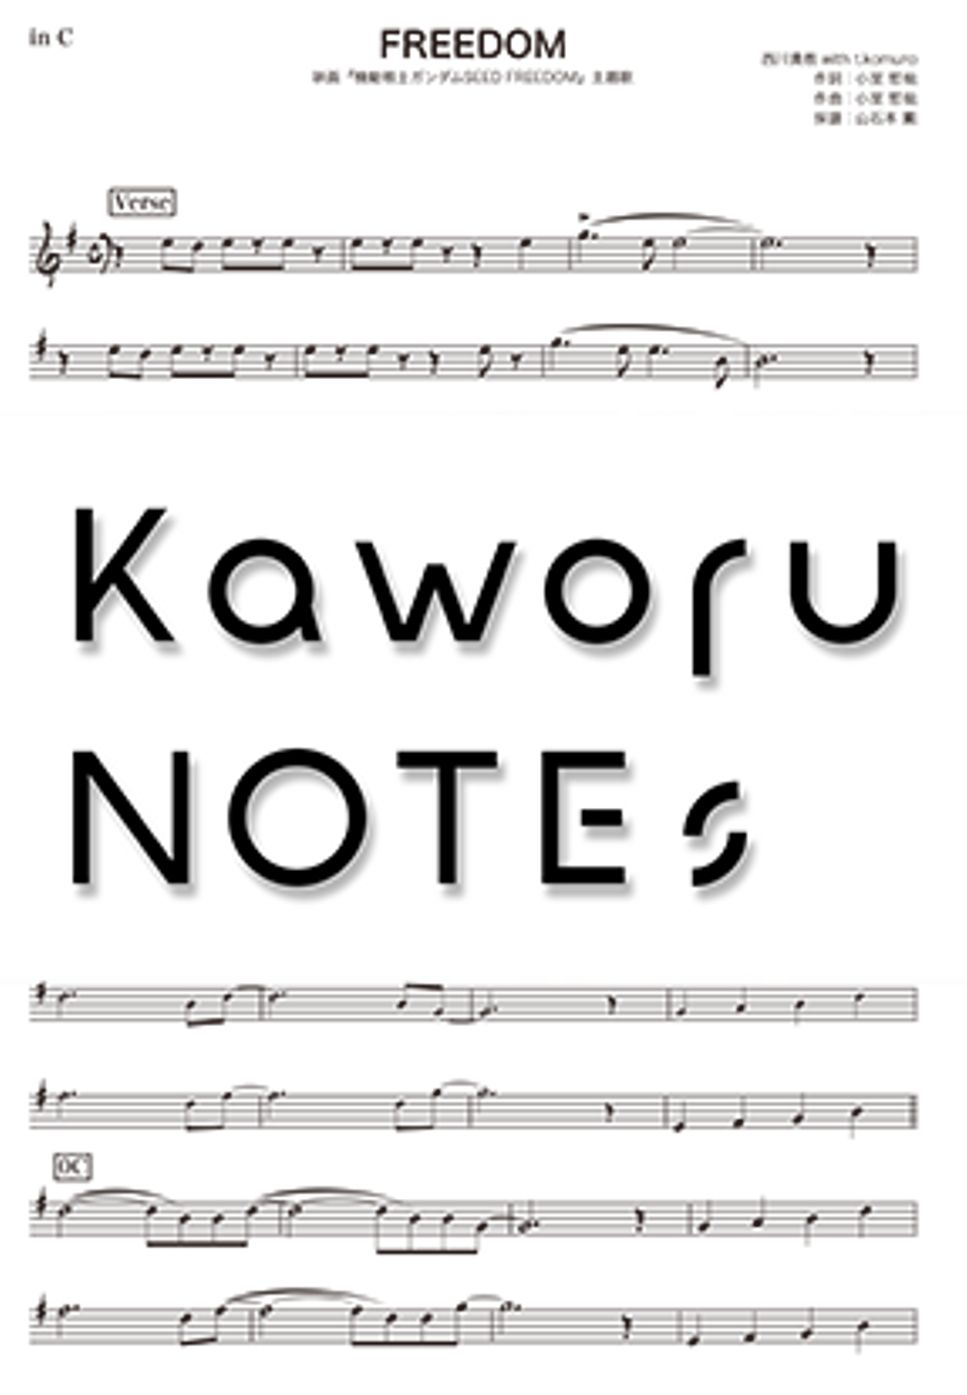 西川貴教 - FREEDOM（動画版 /映画『機動戦士ガンダムSEED FREEDOM』主題歌） by Kaworu NOTEs